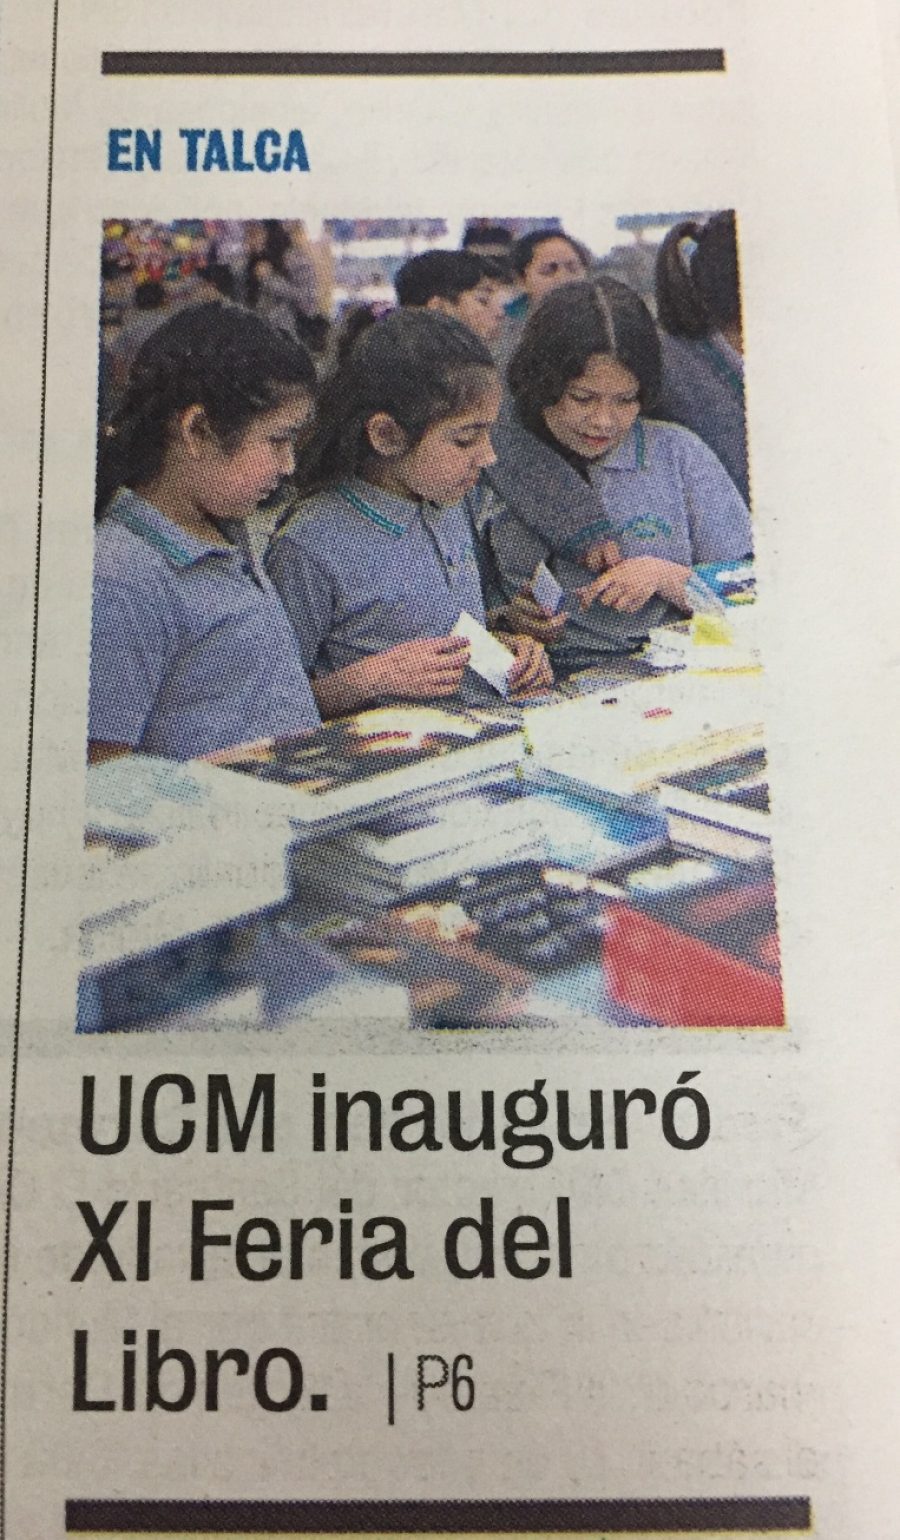 29 de septiembre en Diario La Prensa: “UCM inauguró XI Feria del Libro”